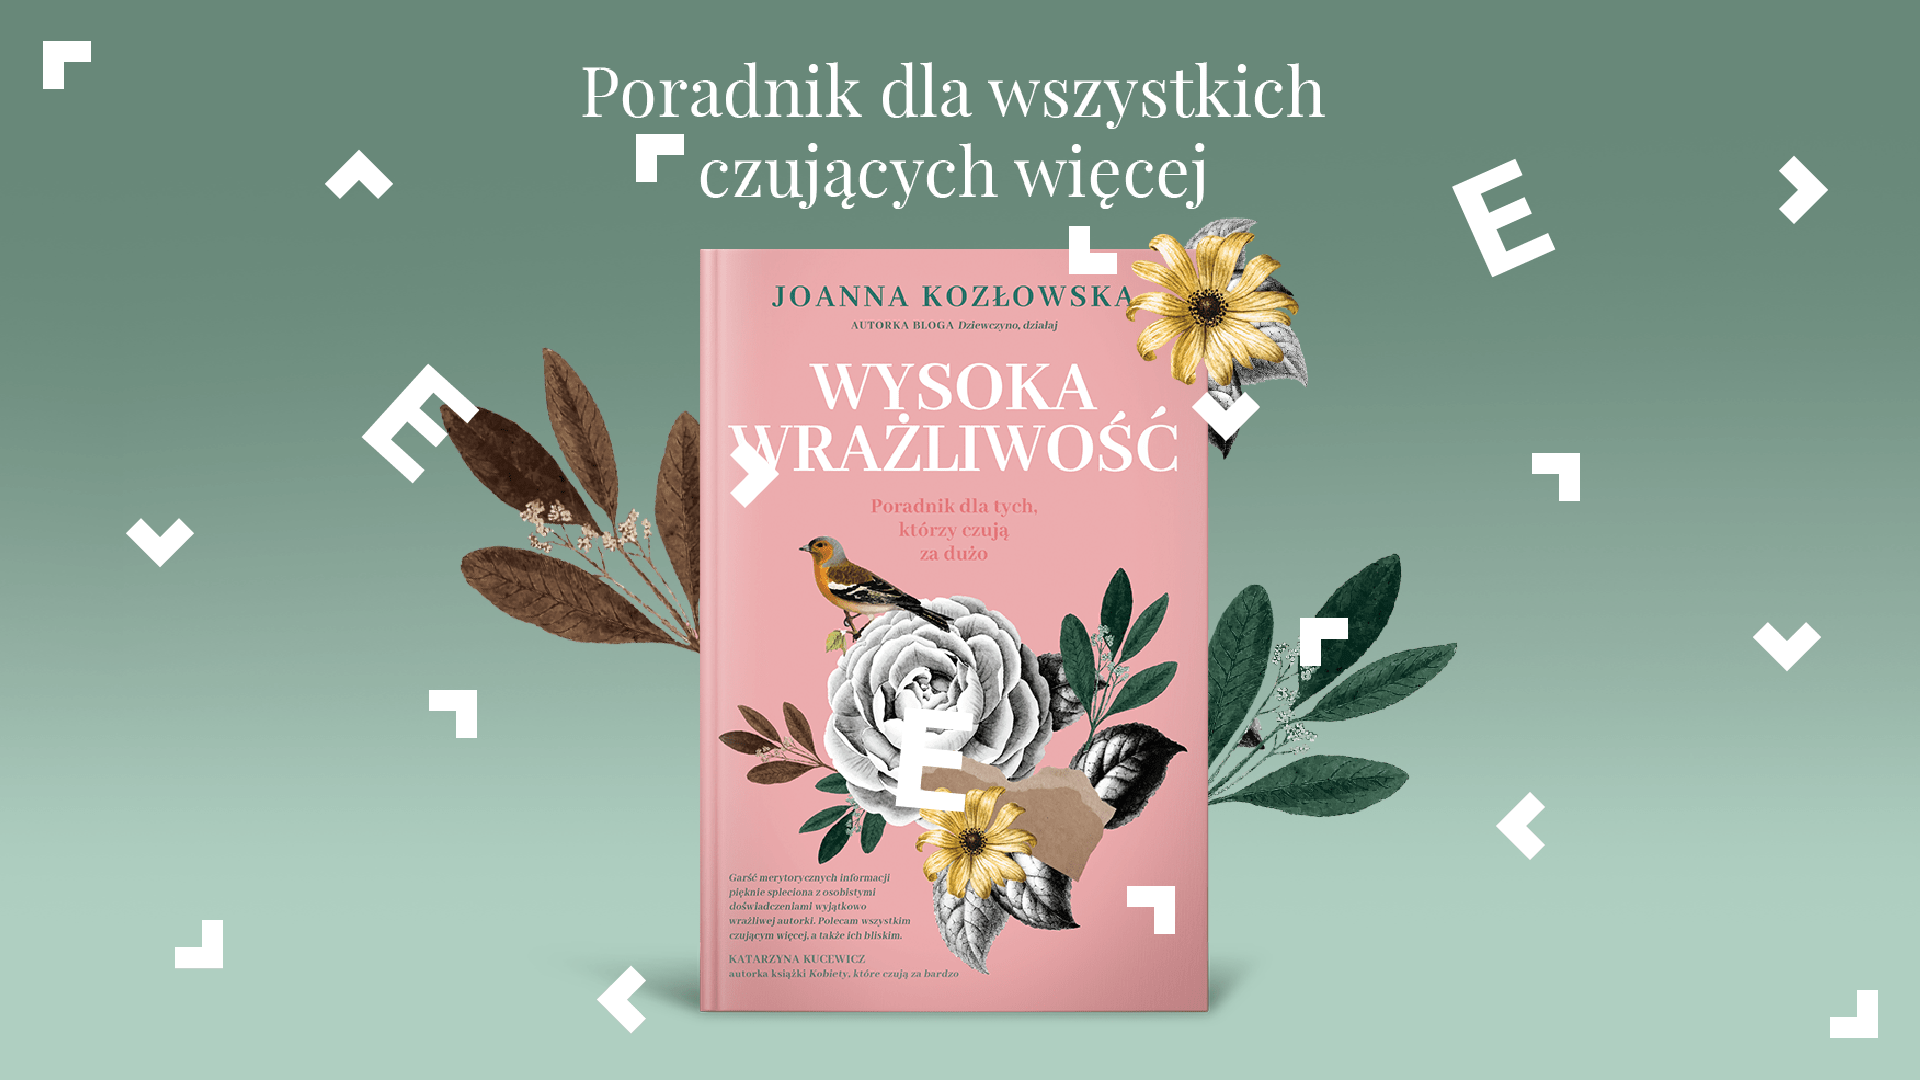 Okładka książki "Wysoka Wrażliwość" Joanny Kozłowskiej.